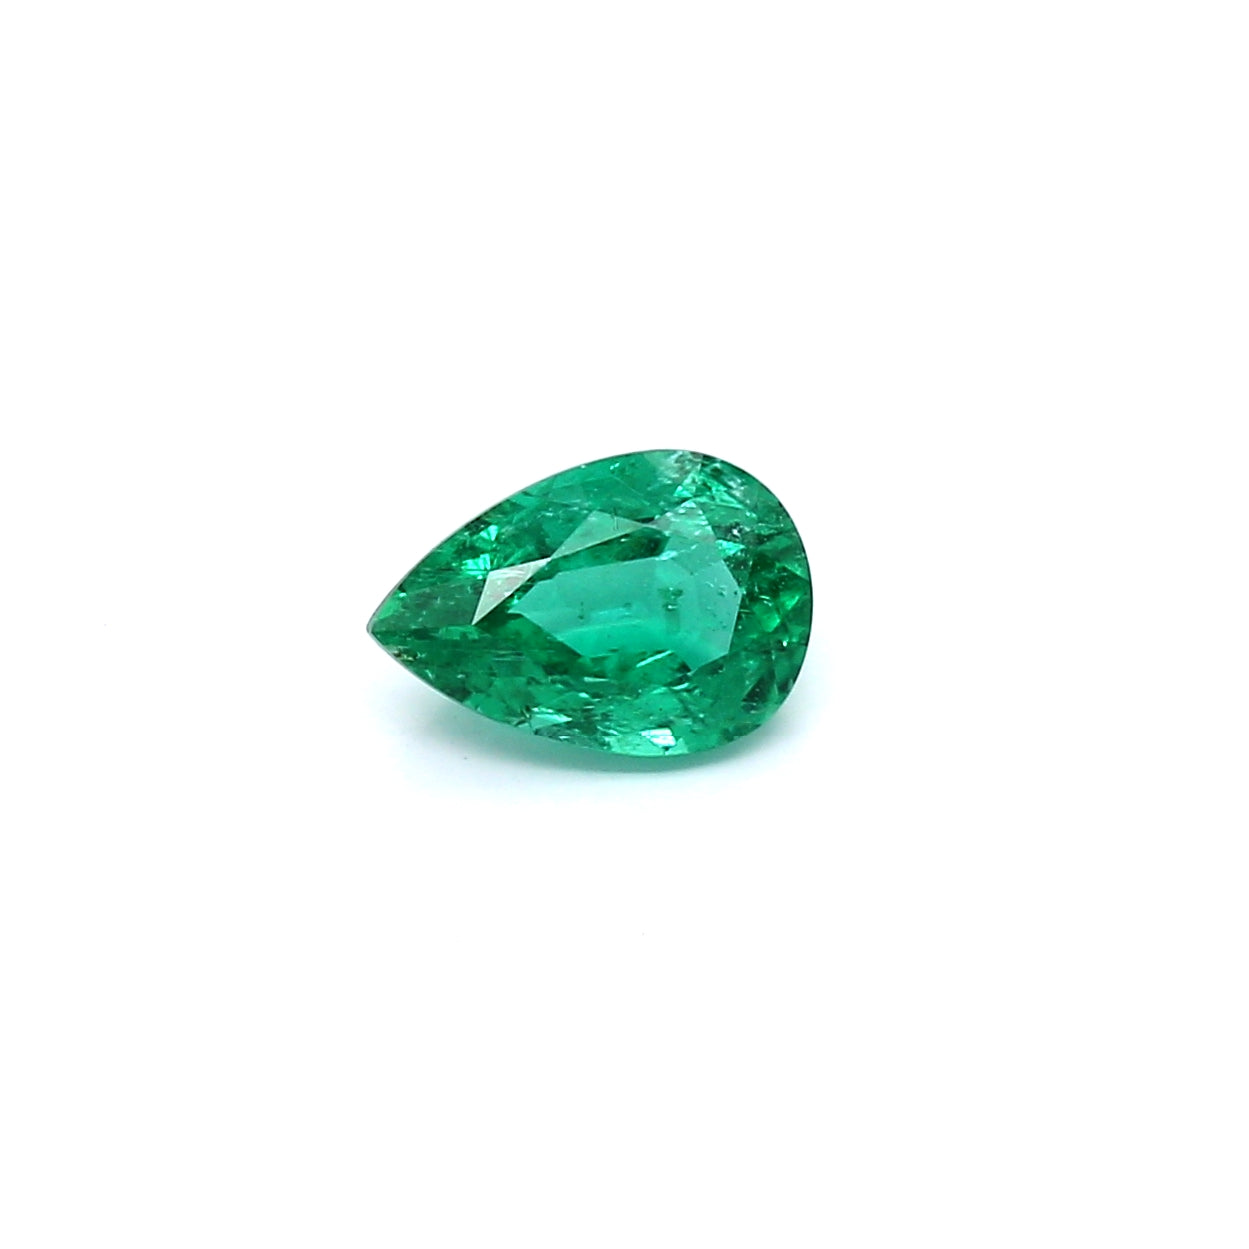 0.87ct Pear Shape Emerald, Minor Oil, Zambia - 7.81 x 5.40 x 3.70mm